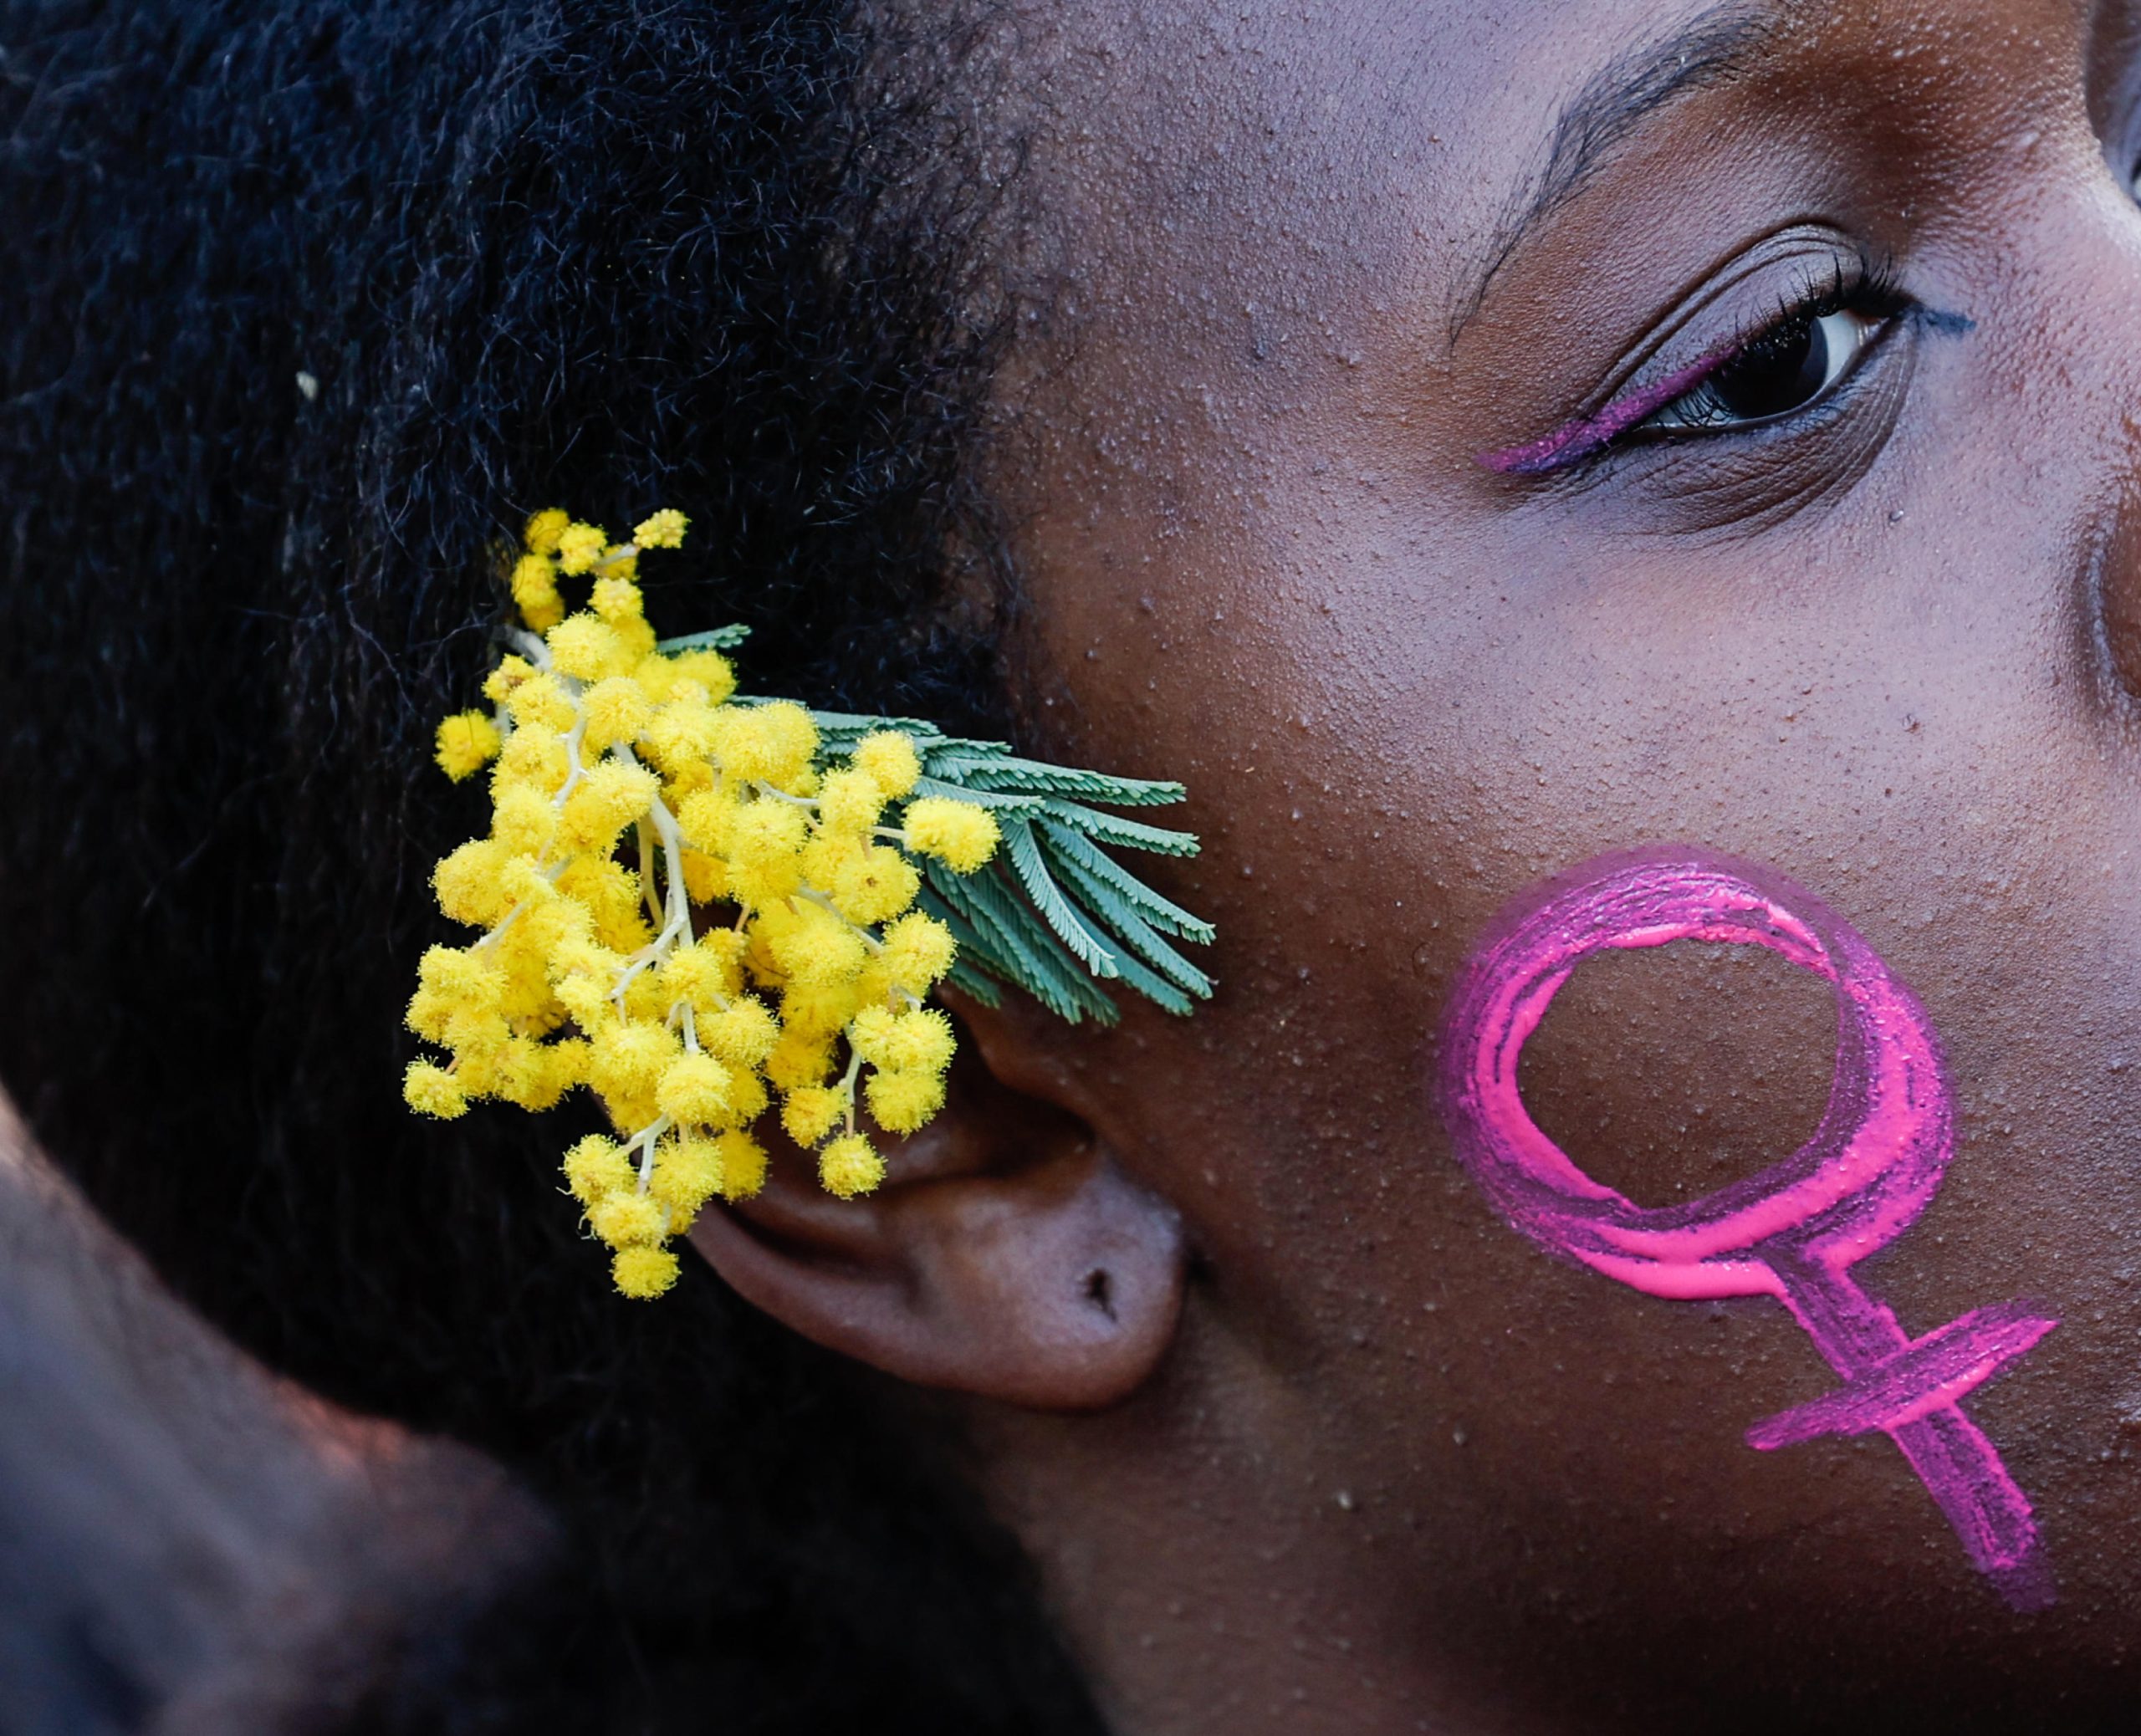 Una manifestante romana porta tra i capelli una mimosa, simbolo italiano della Giornata internazionale della donna